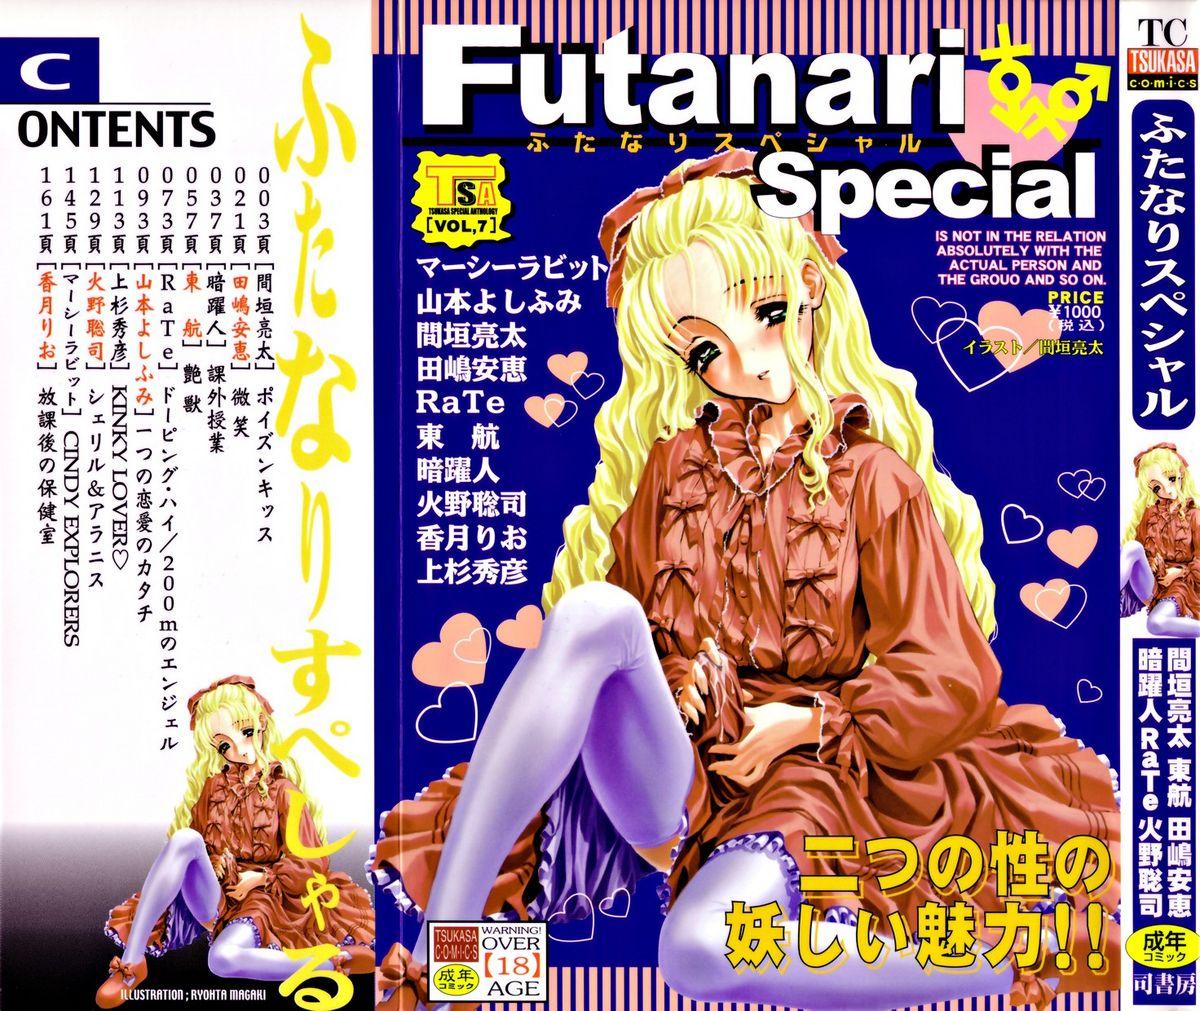 Wrestling Futanari Special Amatuer - Picture 1